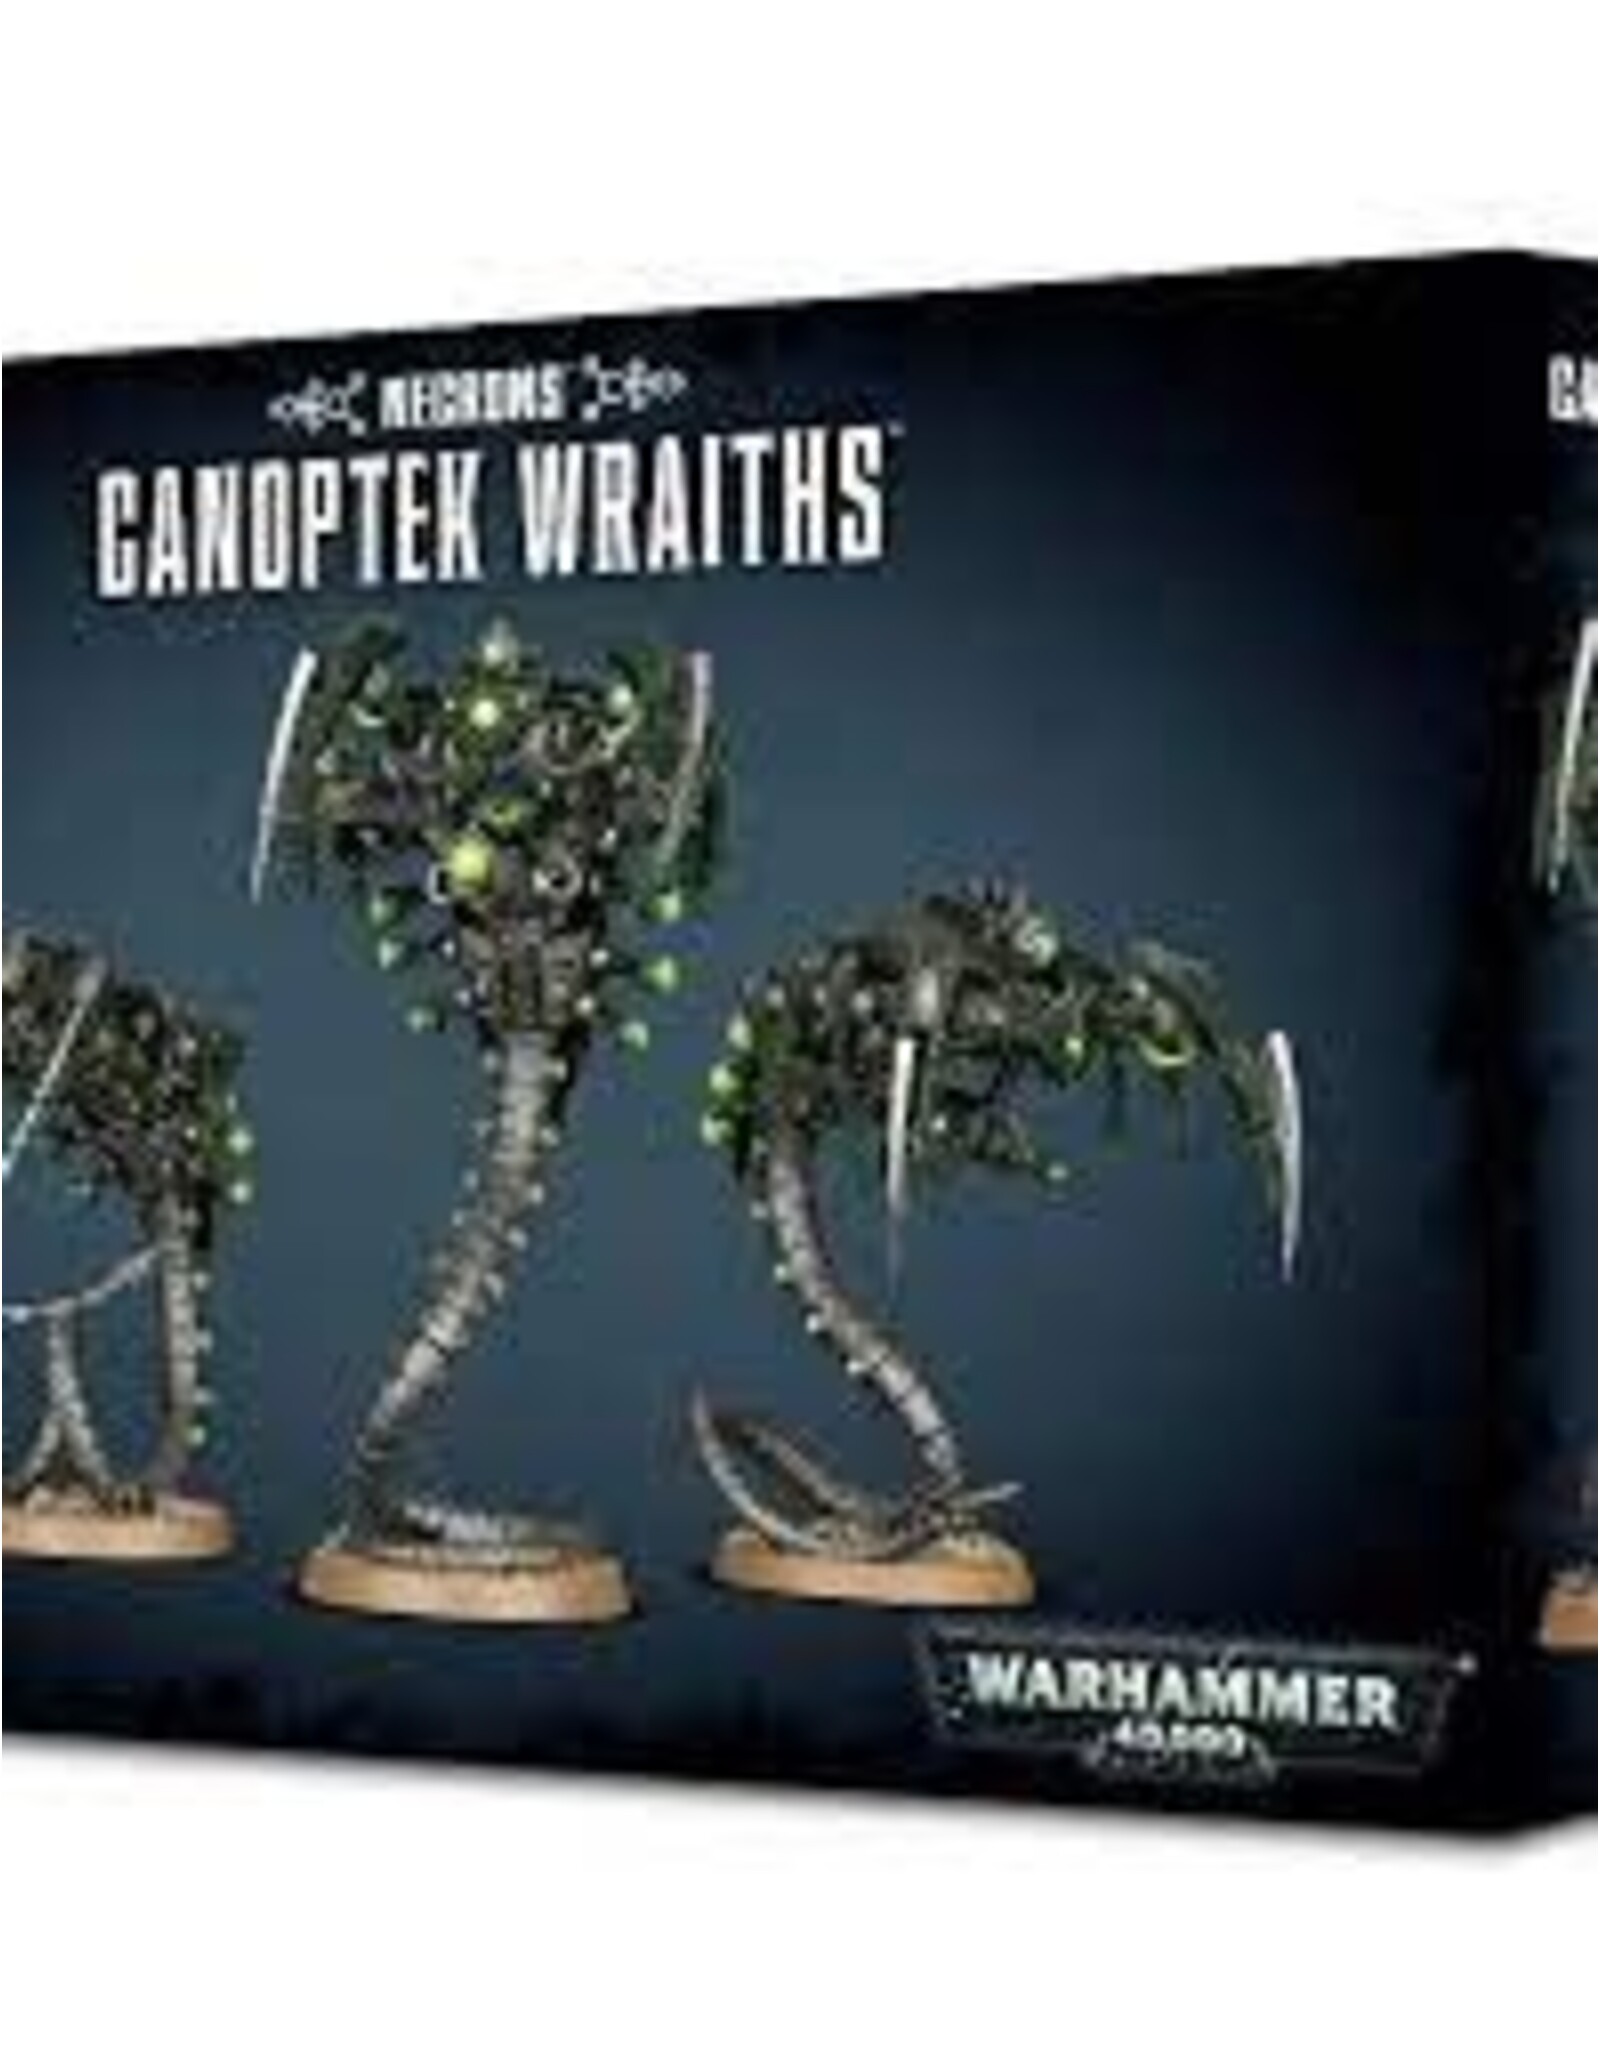 Warhammer 40K Necron Canoptek Wraiths